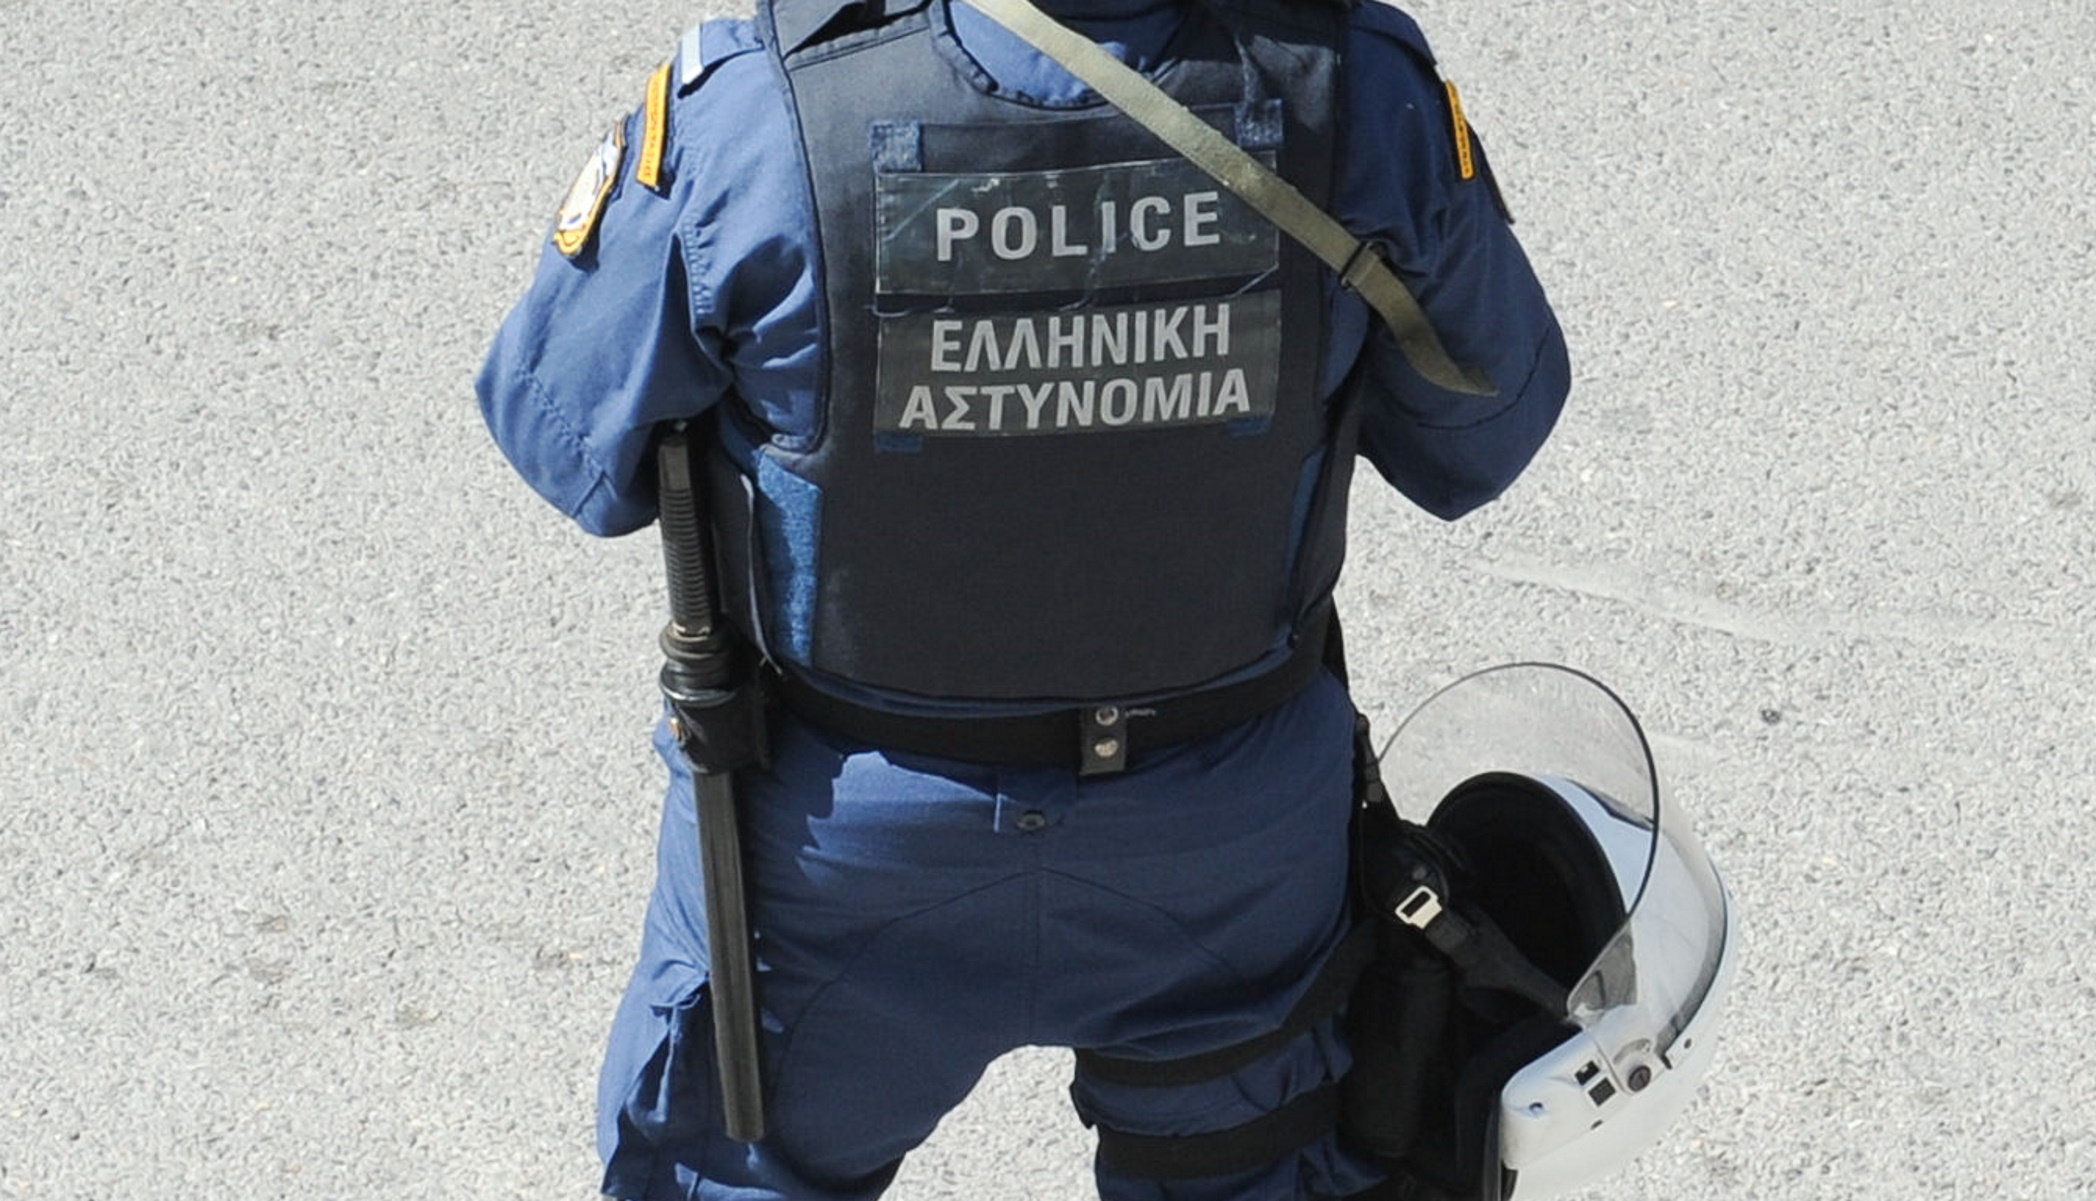 Ζάκυνθος: Η στιγμή που αστυνομικός της ΔΙΑΣ απεγκλωβίζει το βρέφος μέσα από αυτοκίνητο